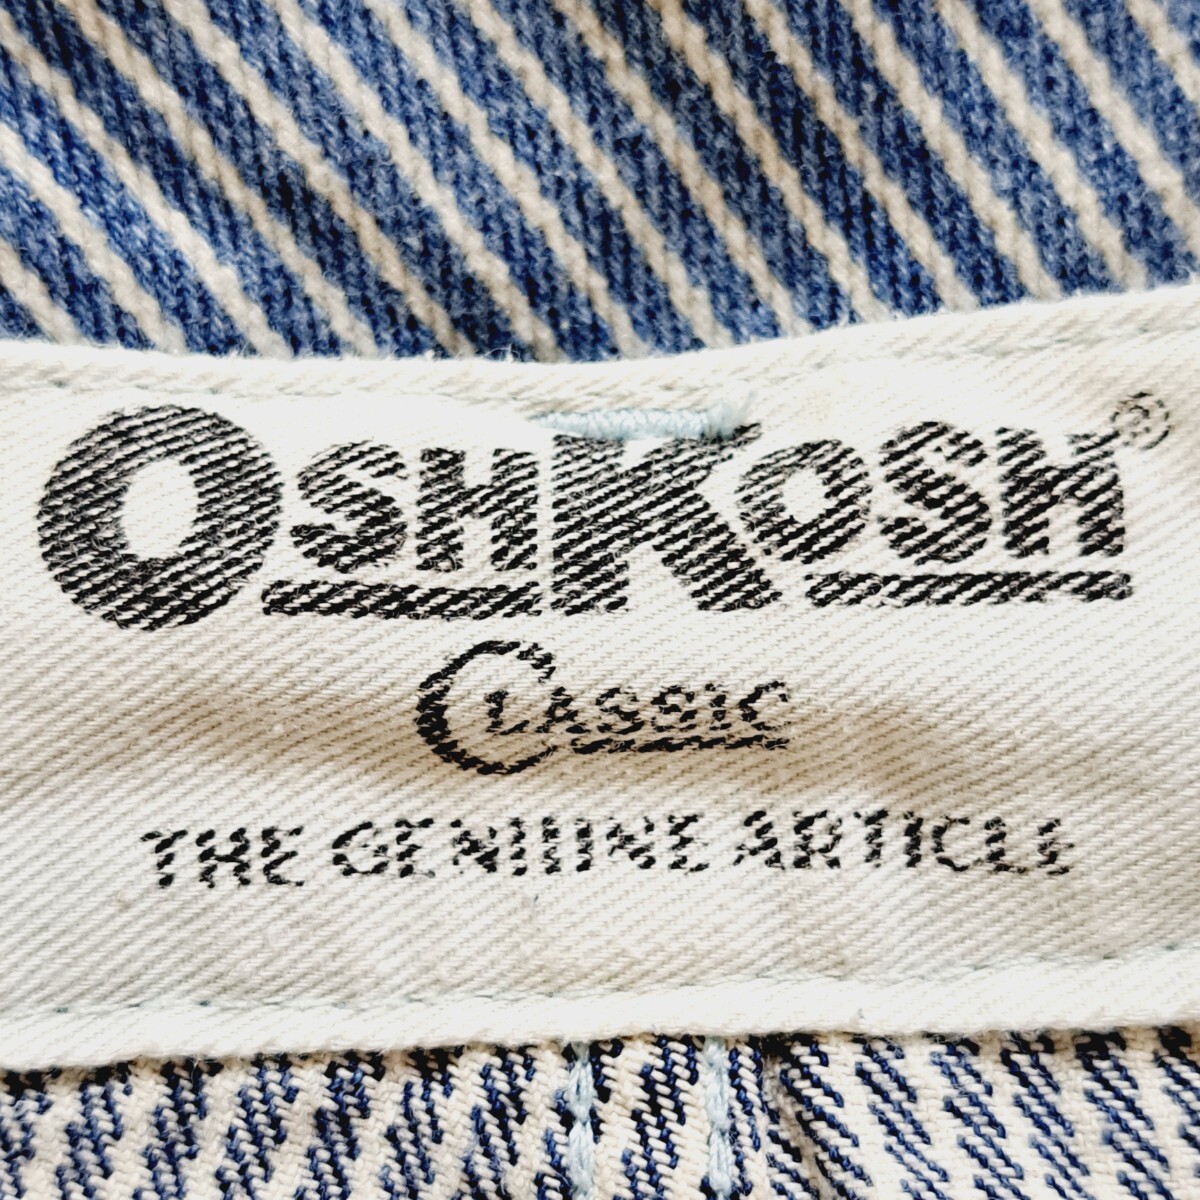 【OSHKOSH】オシュコシュ 7分丈 カーゴパンツ 縦ストライプ 青 ブルー 総柄 こなれ感 おしゃれ 古着 着回し 紳士 メンズ サイズL/Y8856HH_画像8